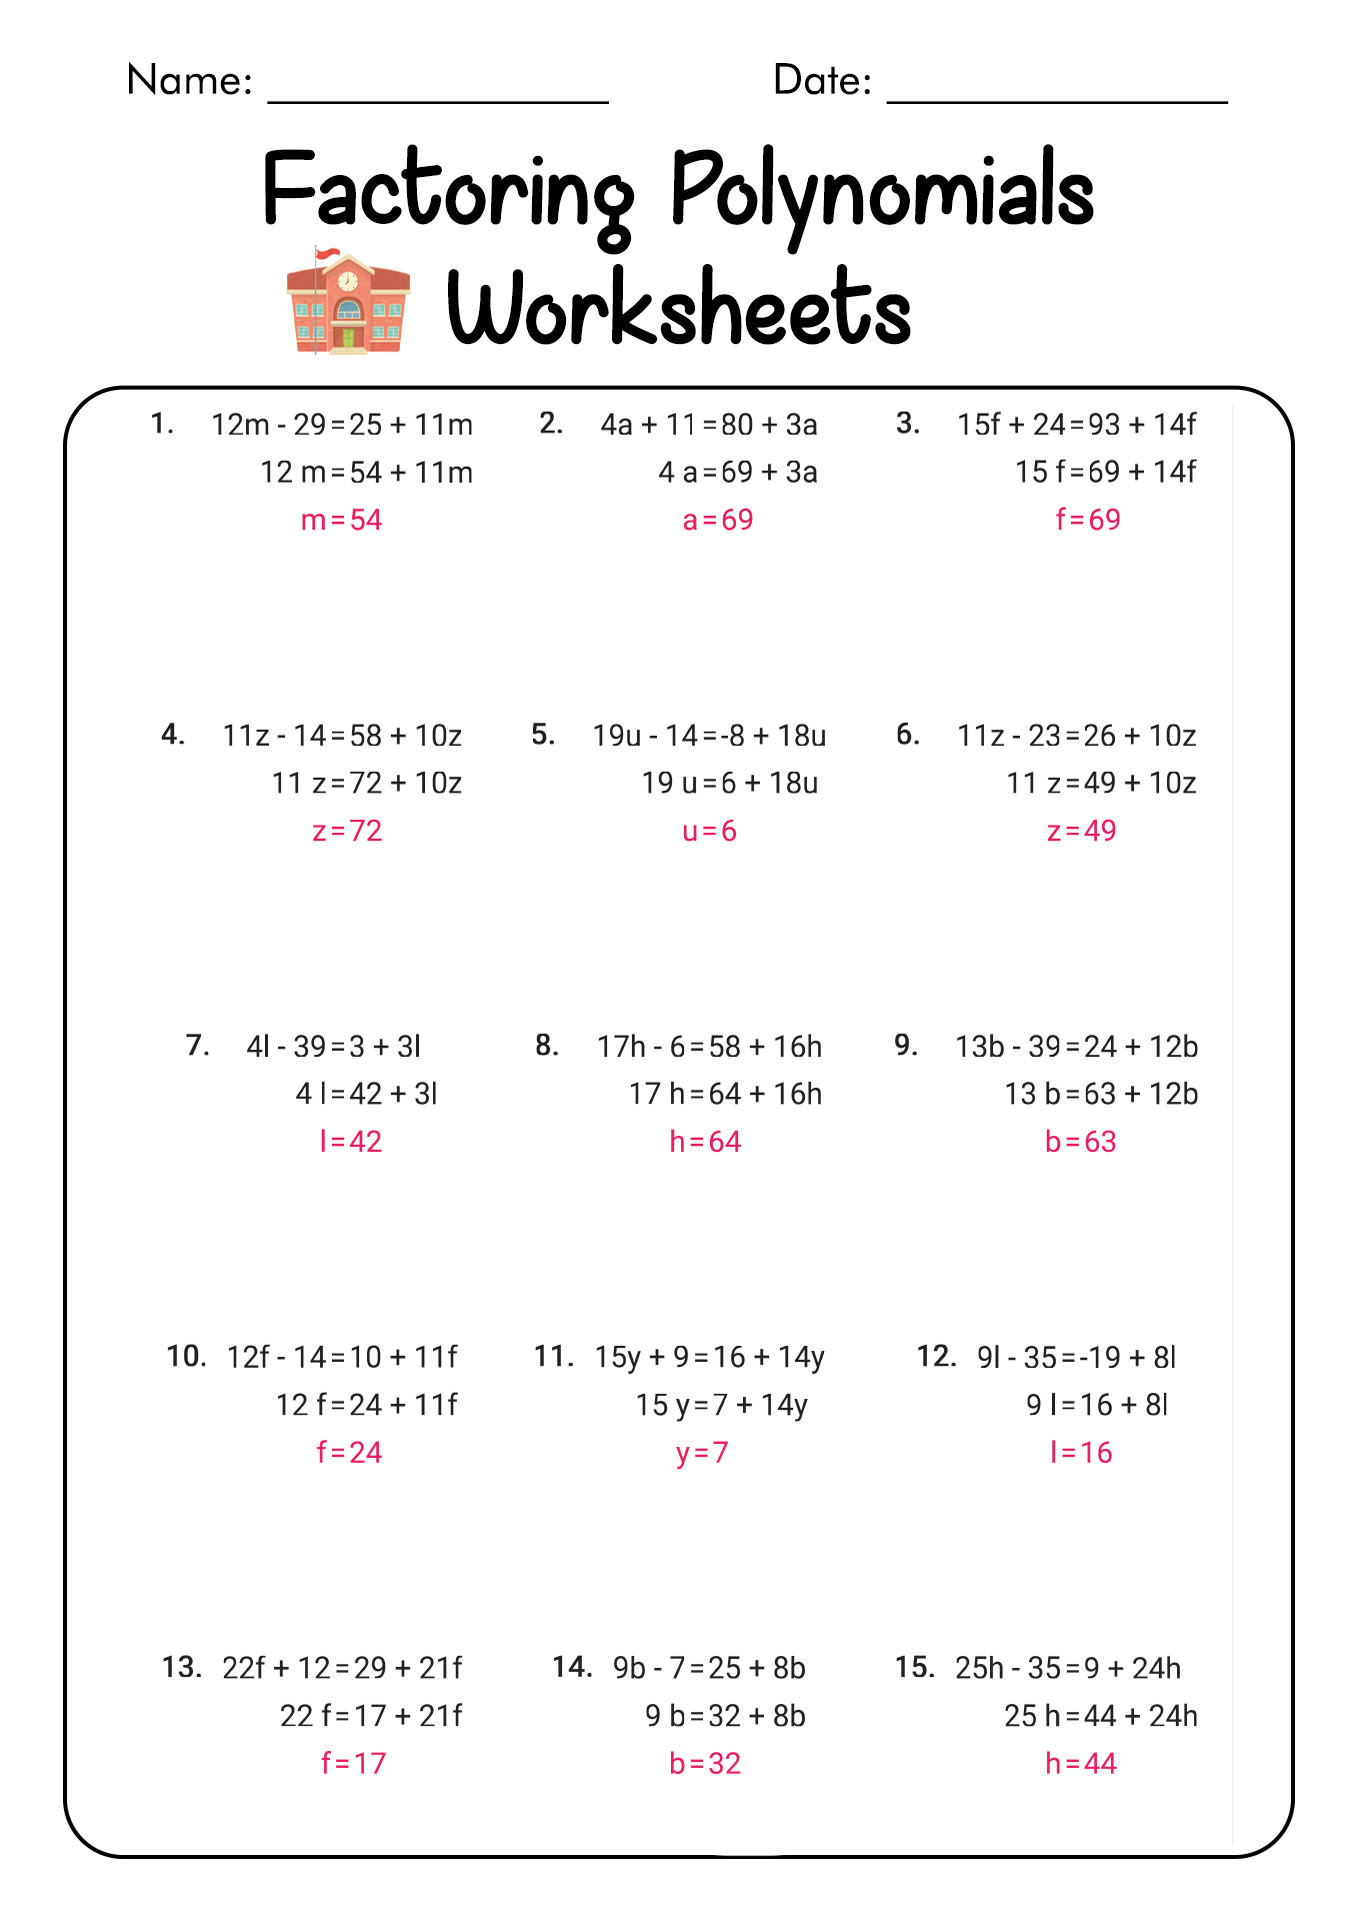 Factoring Trinomials Practice Worksheet - Promotiontablecovers In Factoring Practice Worksheet Answers